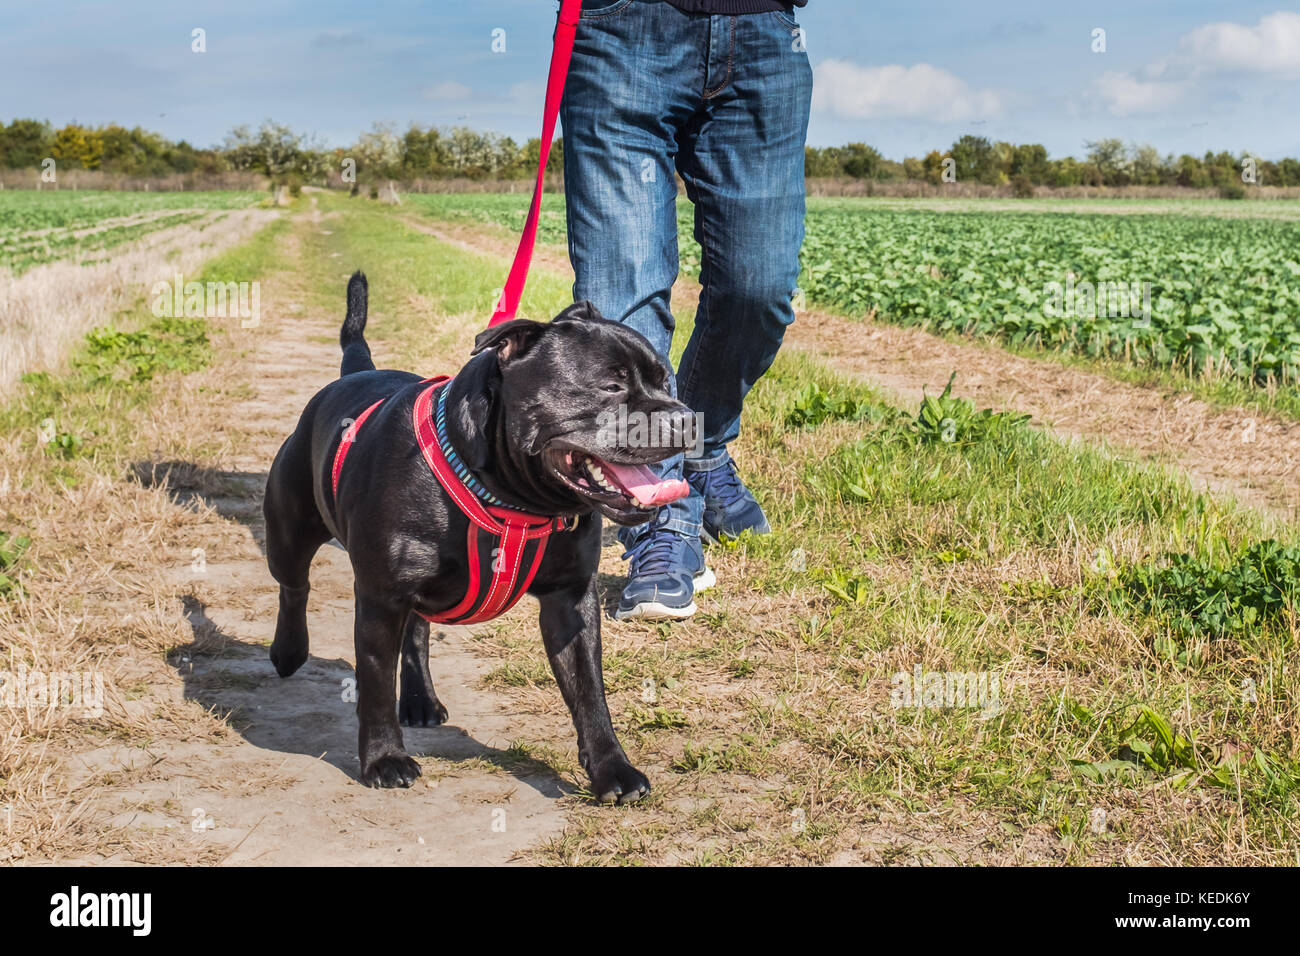 Mann mit Jeans und Turnschuhe walking Ein Staffordshire Bull Terrier Hund an der Leine, ein rotes Kabel mit einem roten Kabelbaum. Sie sind in einem Feld in der Landschaft sind Stockfoto